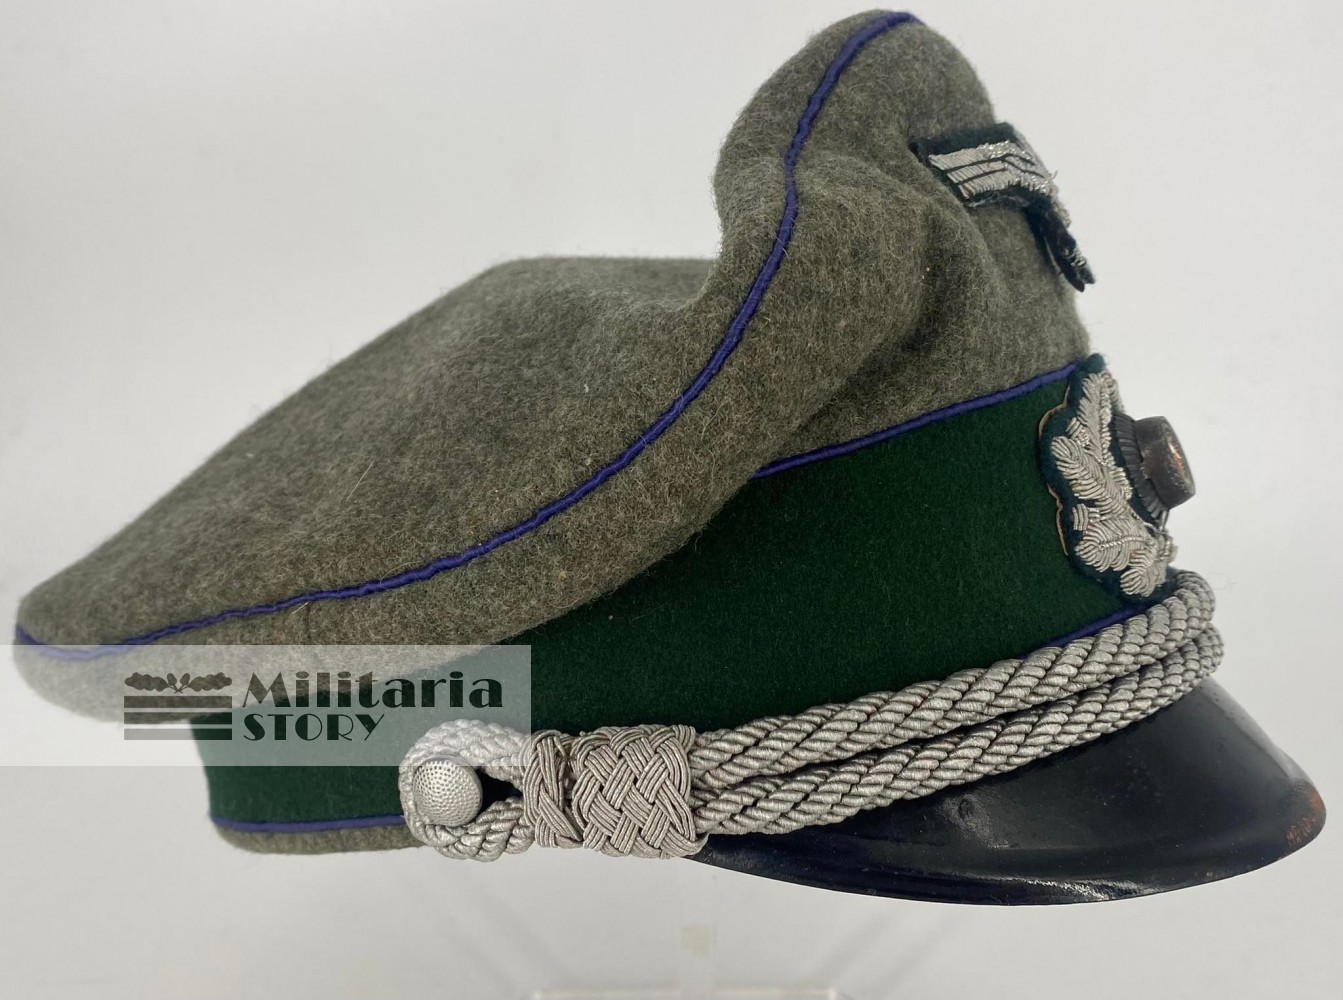 Heer Medical Officer visor cap - Heer Medical Officer visor cap: Vintage German Headgear